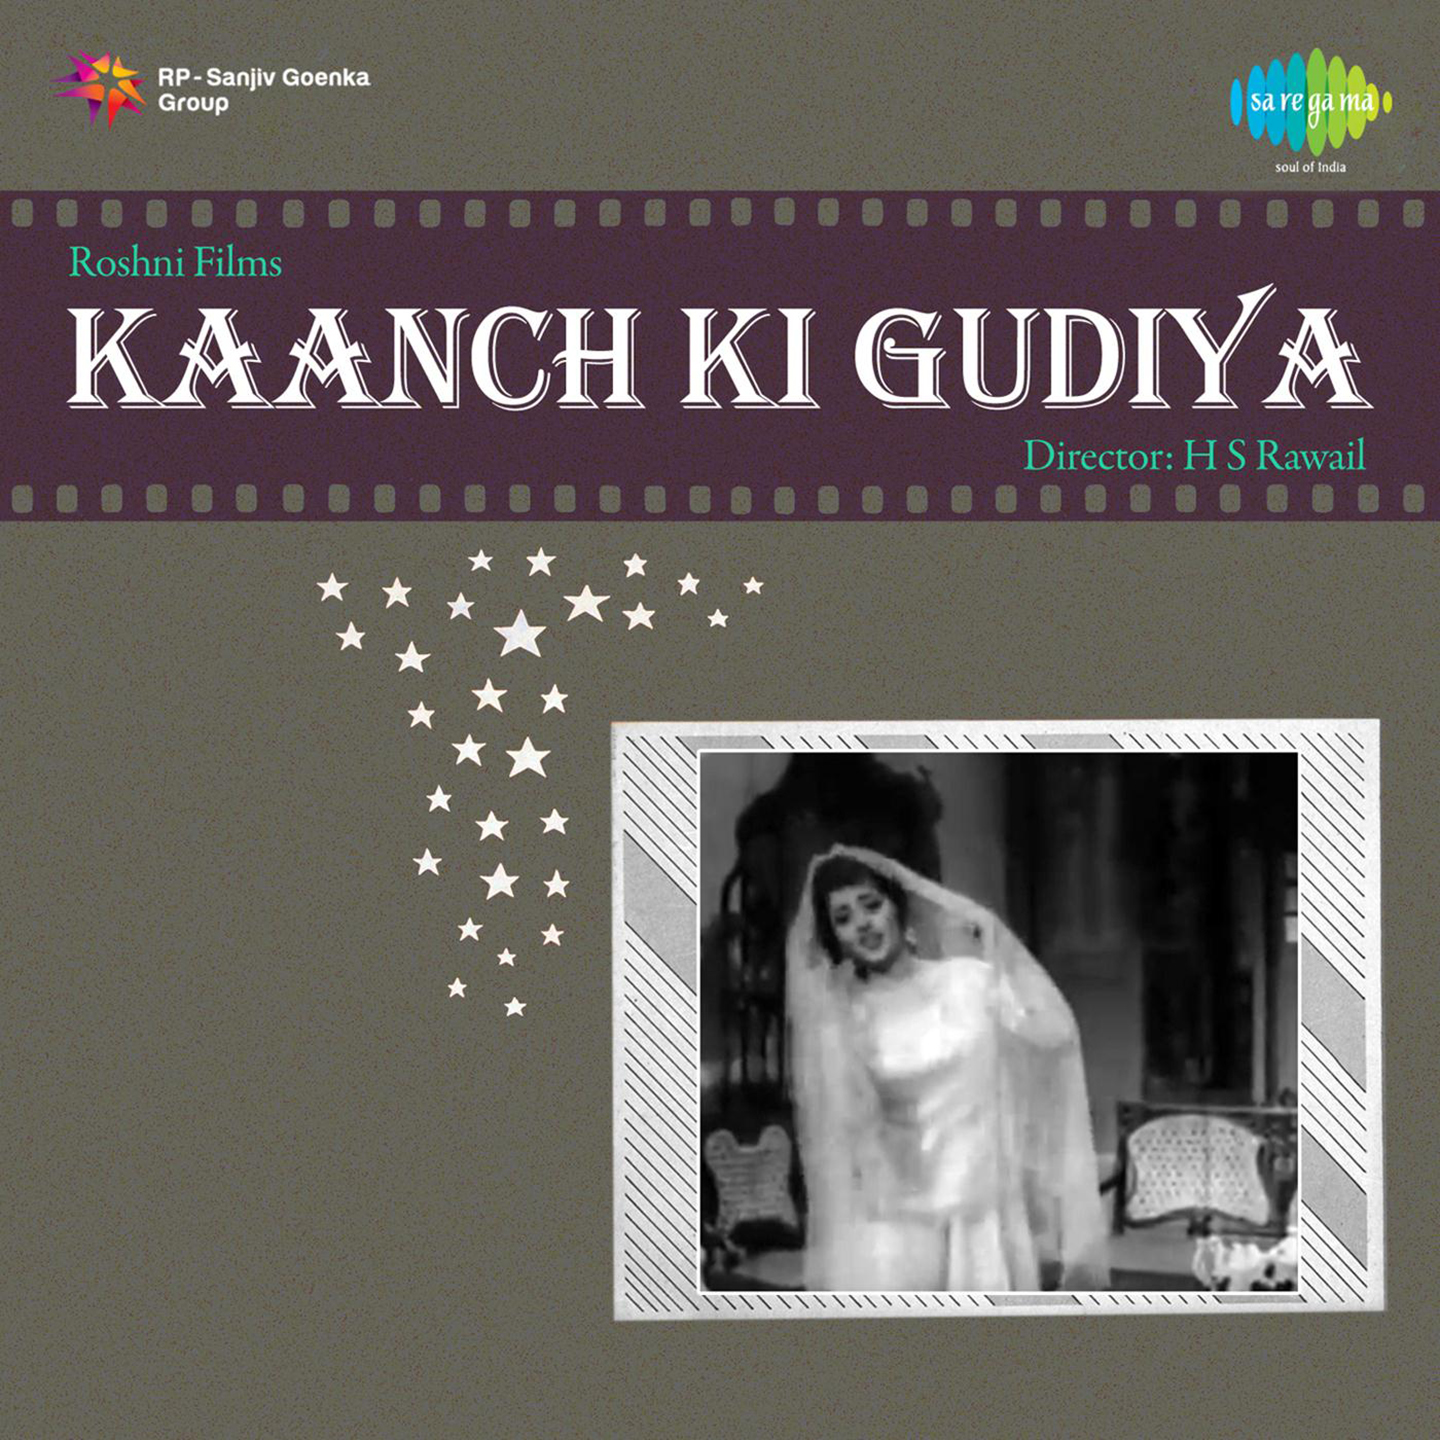 Kaanch Ki Gudiya